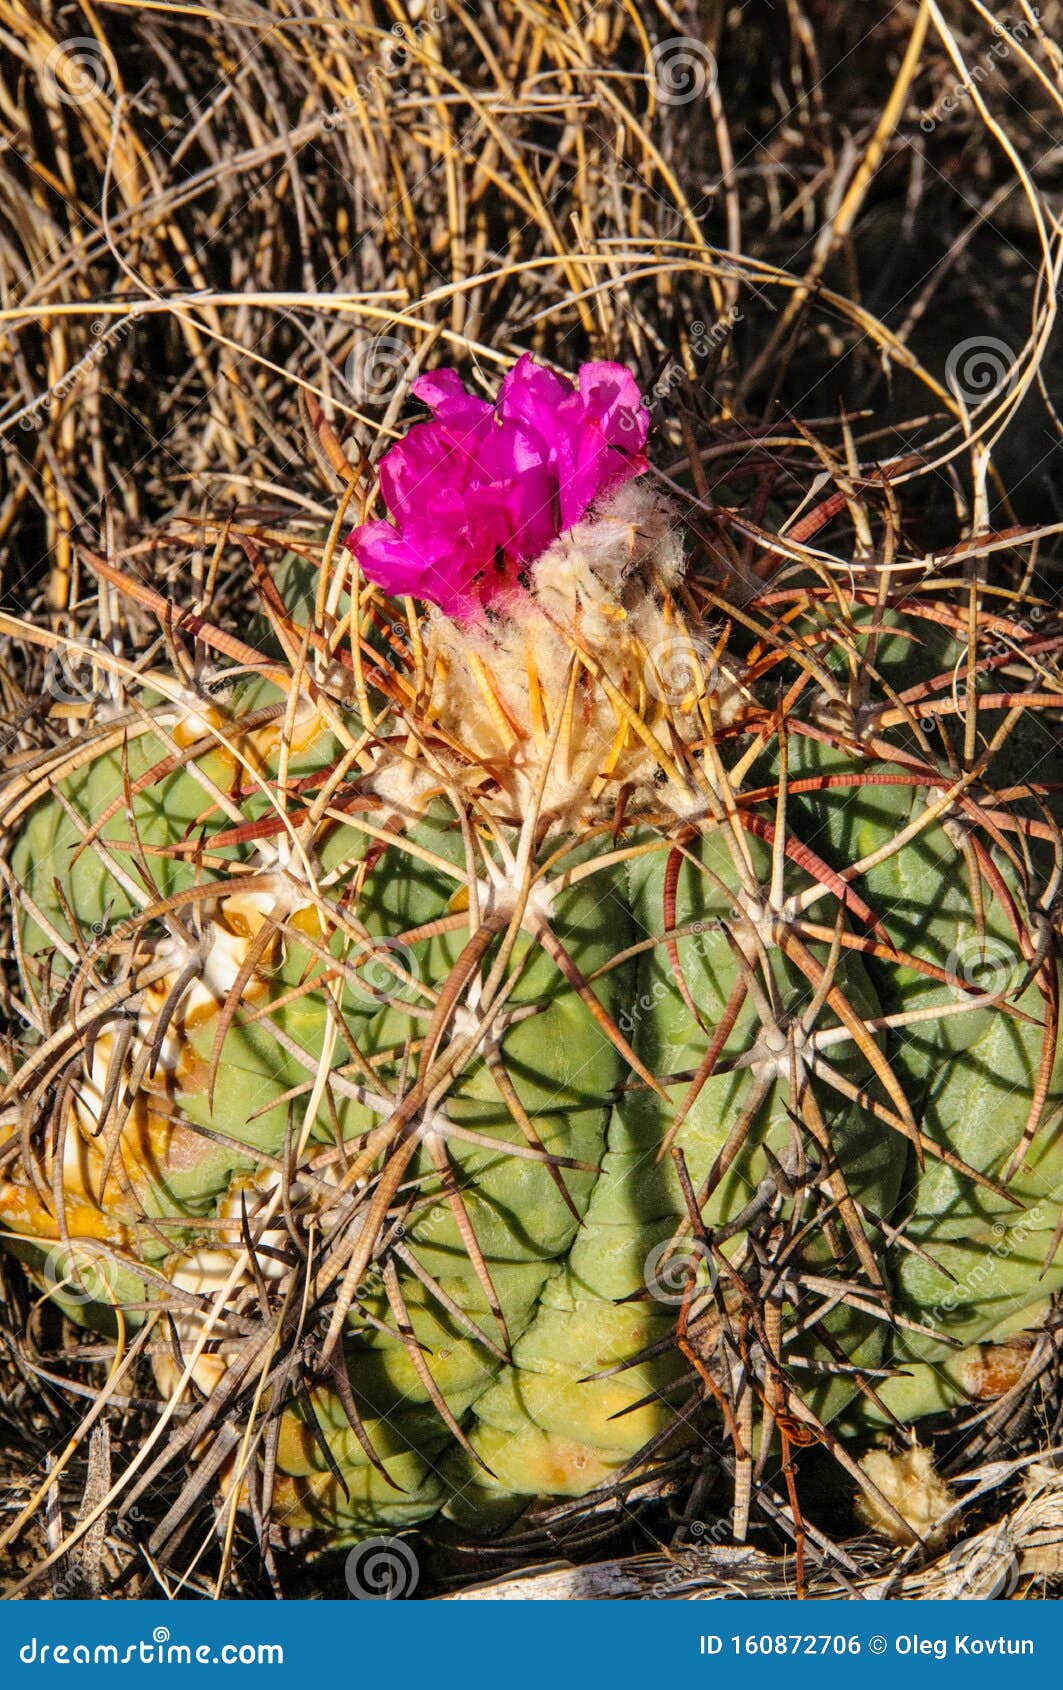 flower echinocactus horizonthalonius, turk`s head cactus in the texas desert